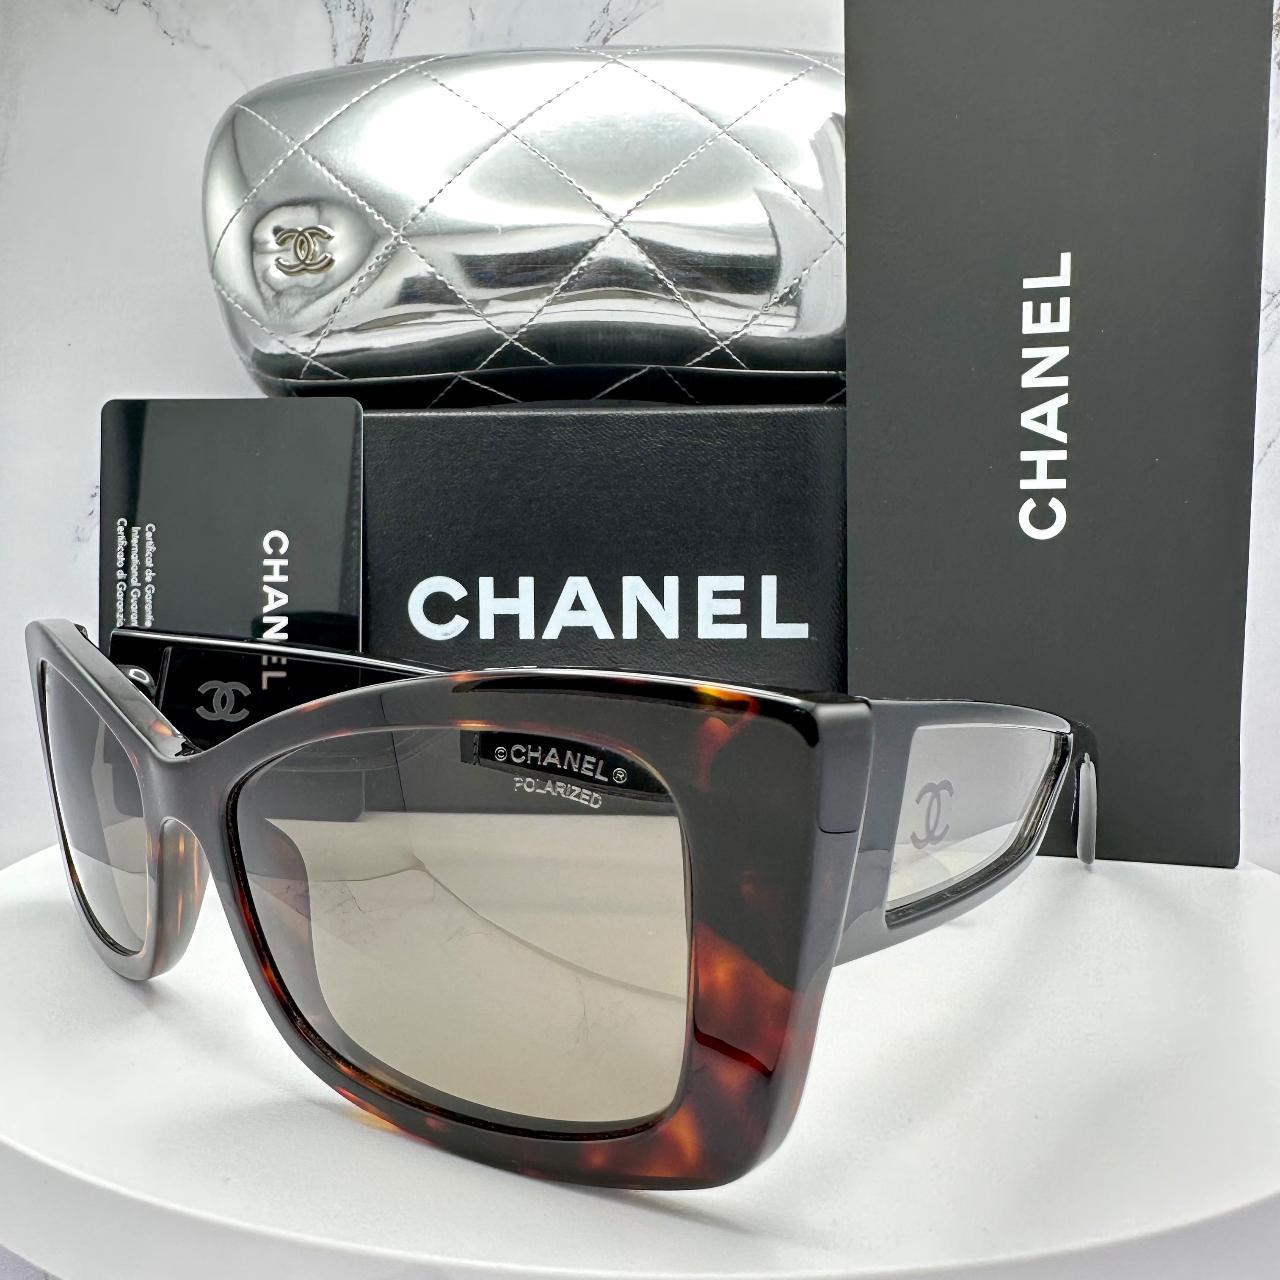 Chanel Women's Square Sunglasses - Black